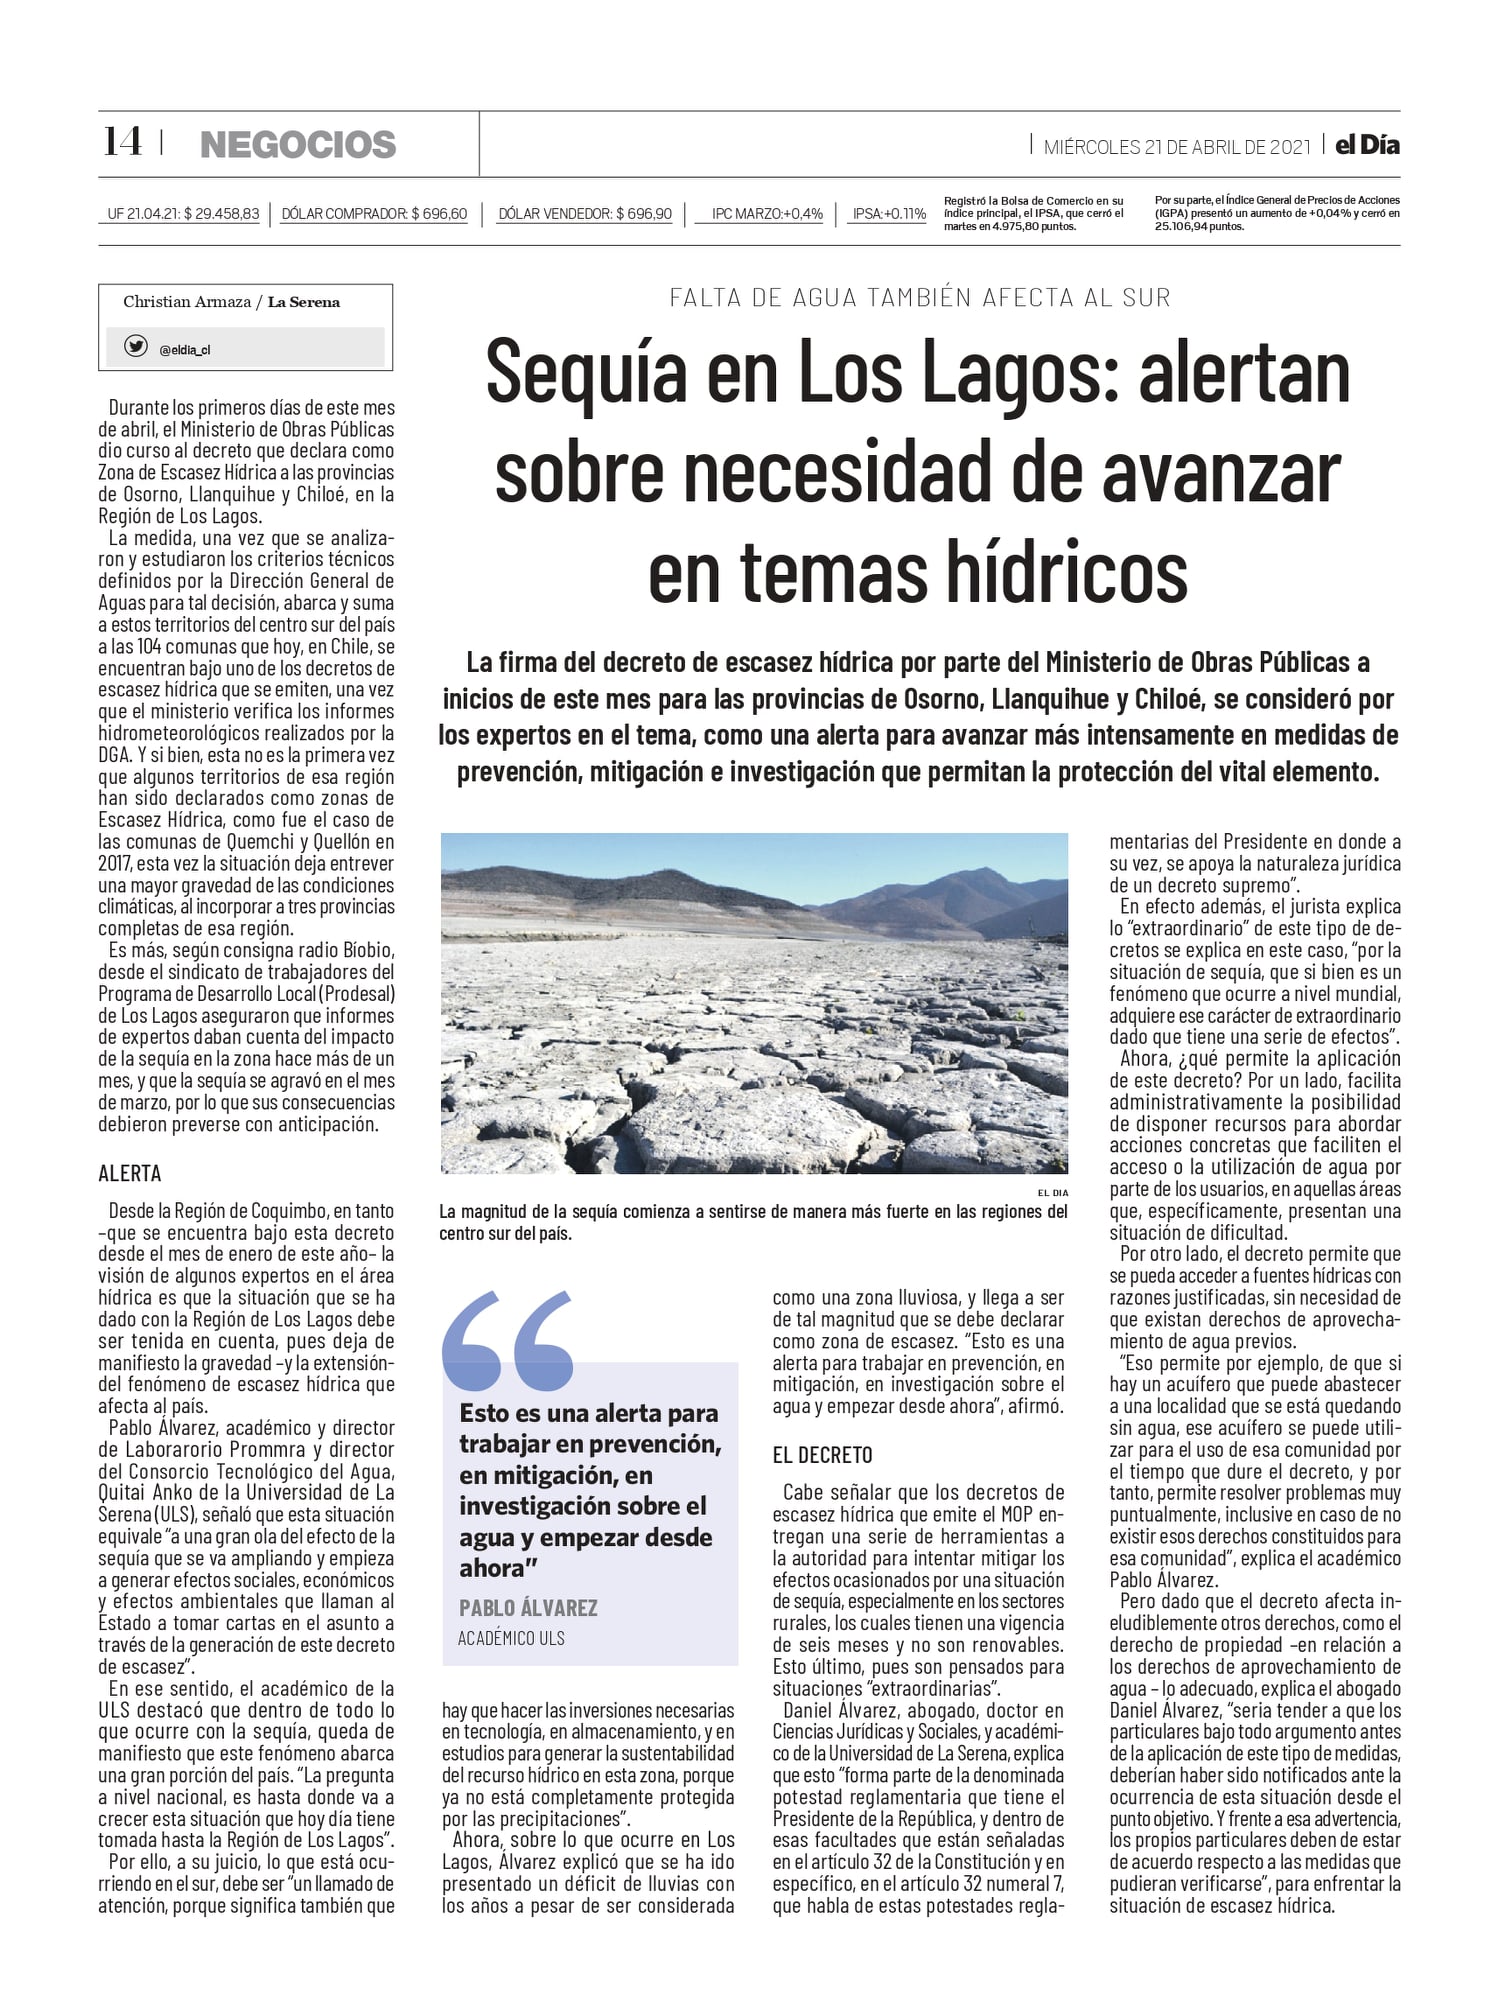 [El Día] Firma de Decreto de Escasez Hídrica en provincias del sur de Chile